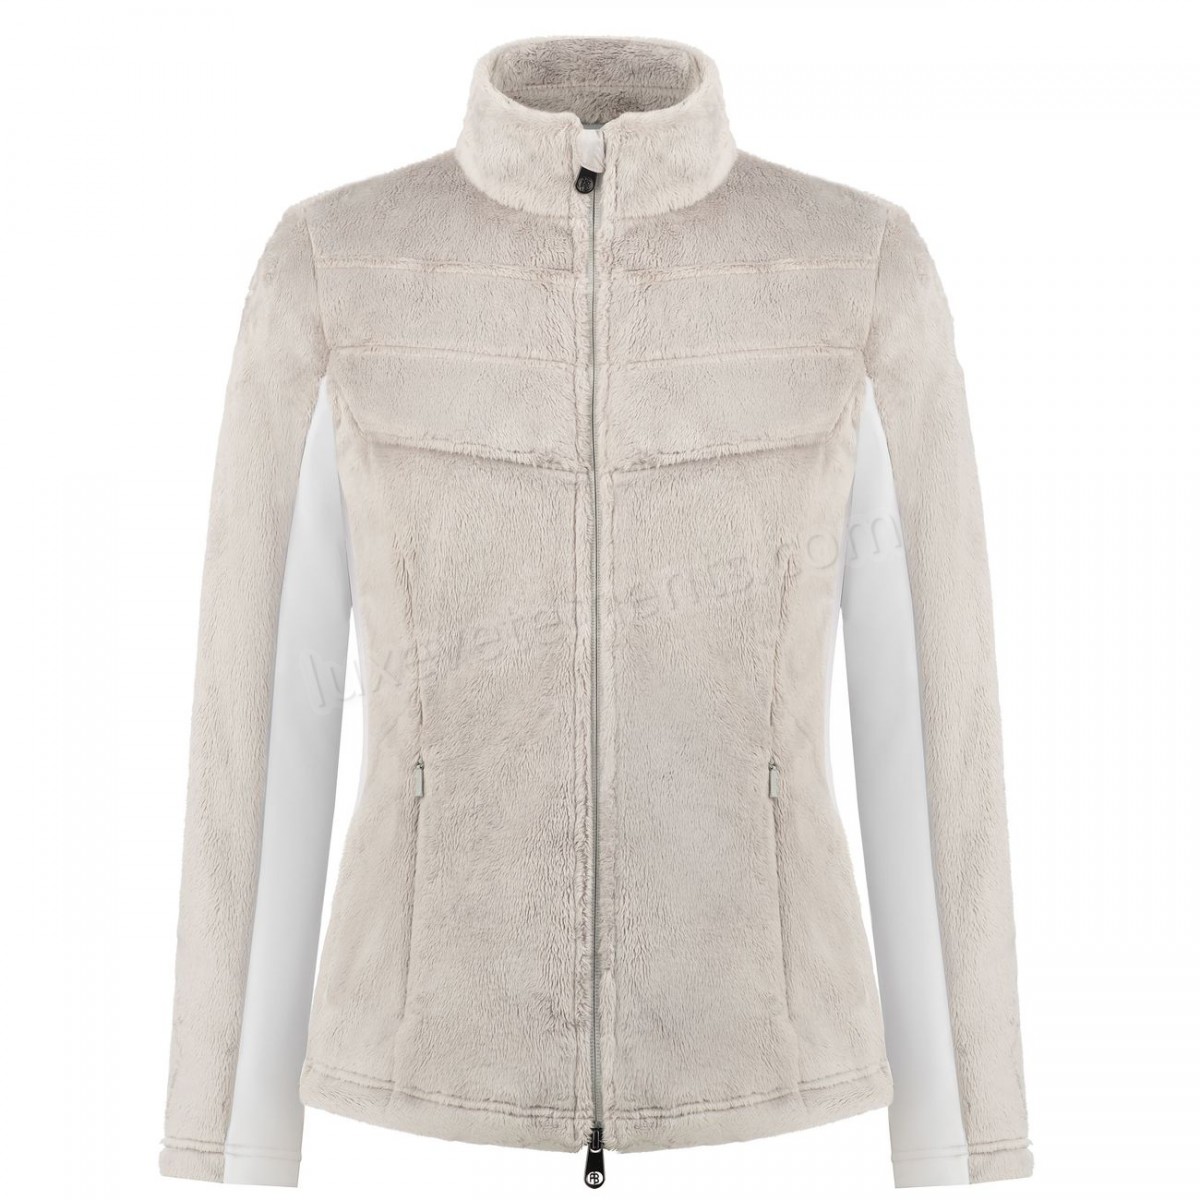 Poivre Blanc-Sports d'hiver femme POIVRE BLANC Polaire Poivre Blanc Long Pile Fleece Jacket 1603 Mineral Grey/white Femme Vente en ligne - -1